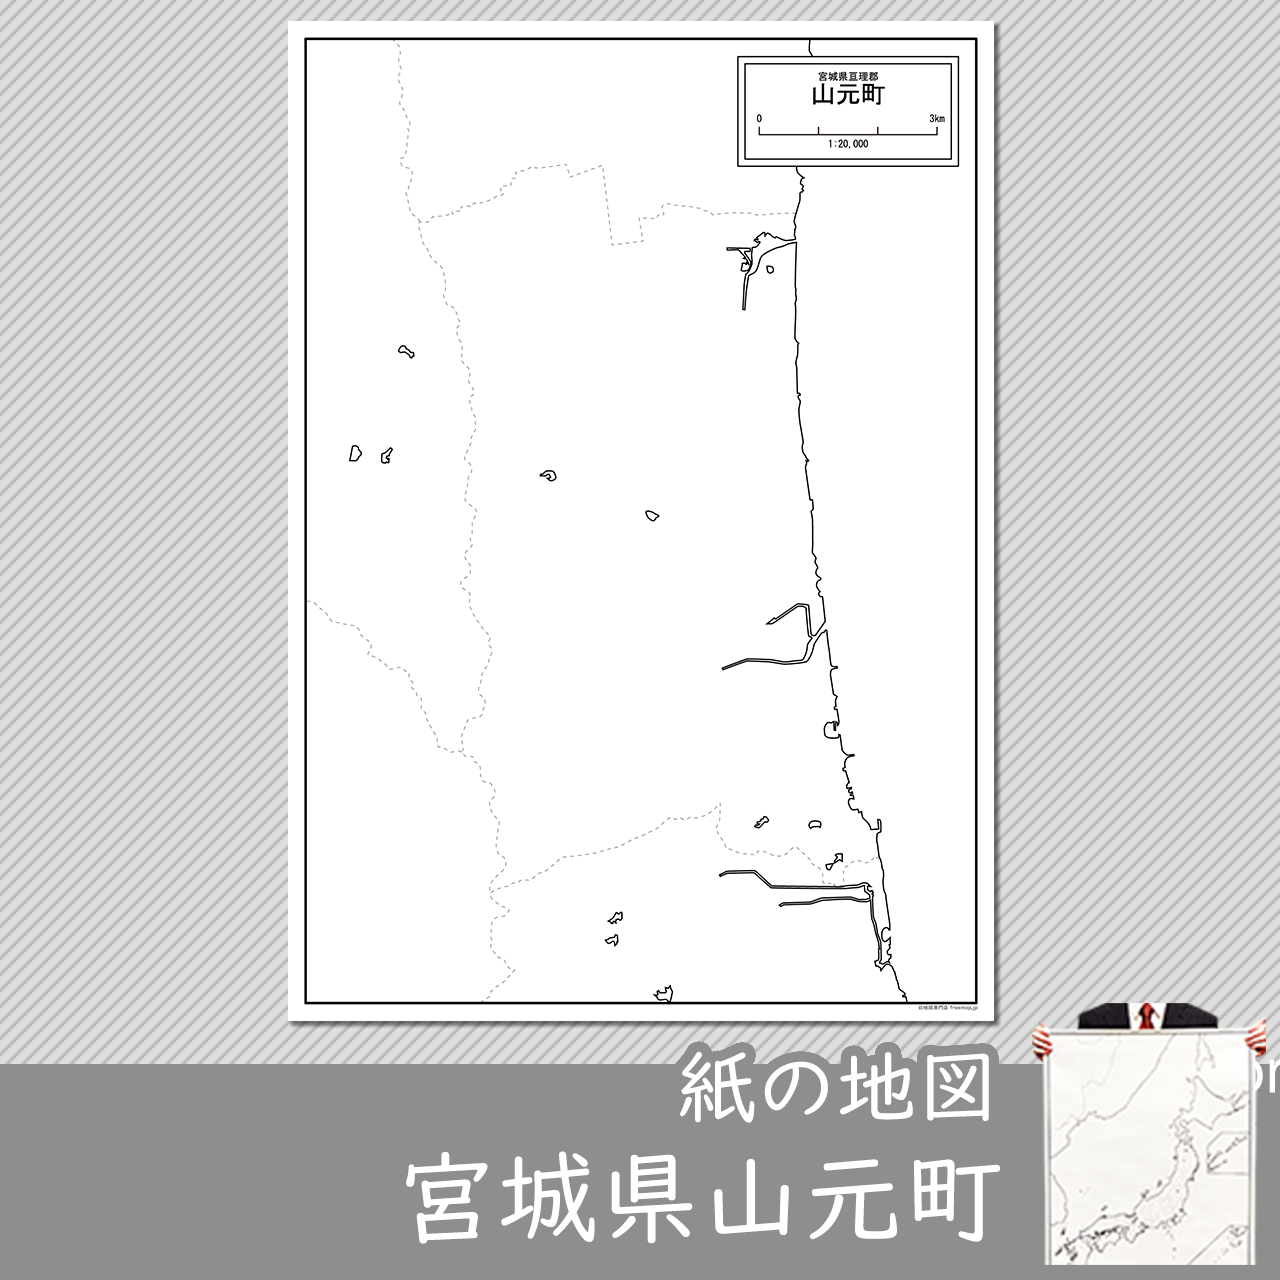 山元町の紙の白地図のサムネイル